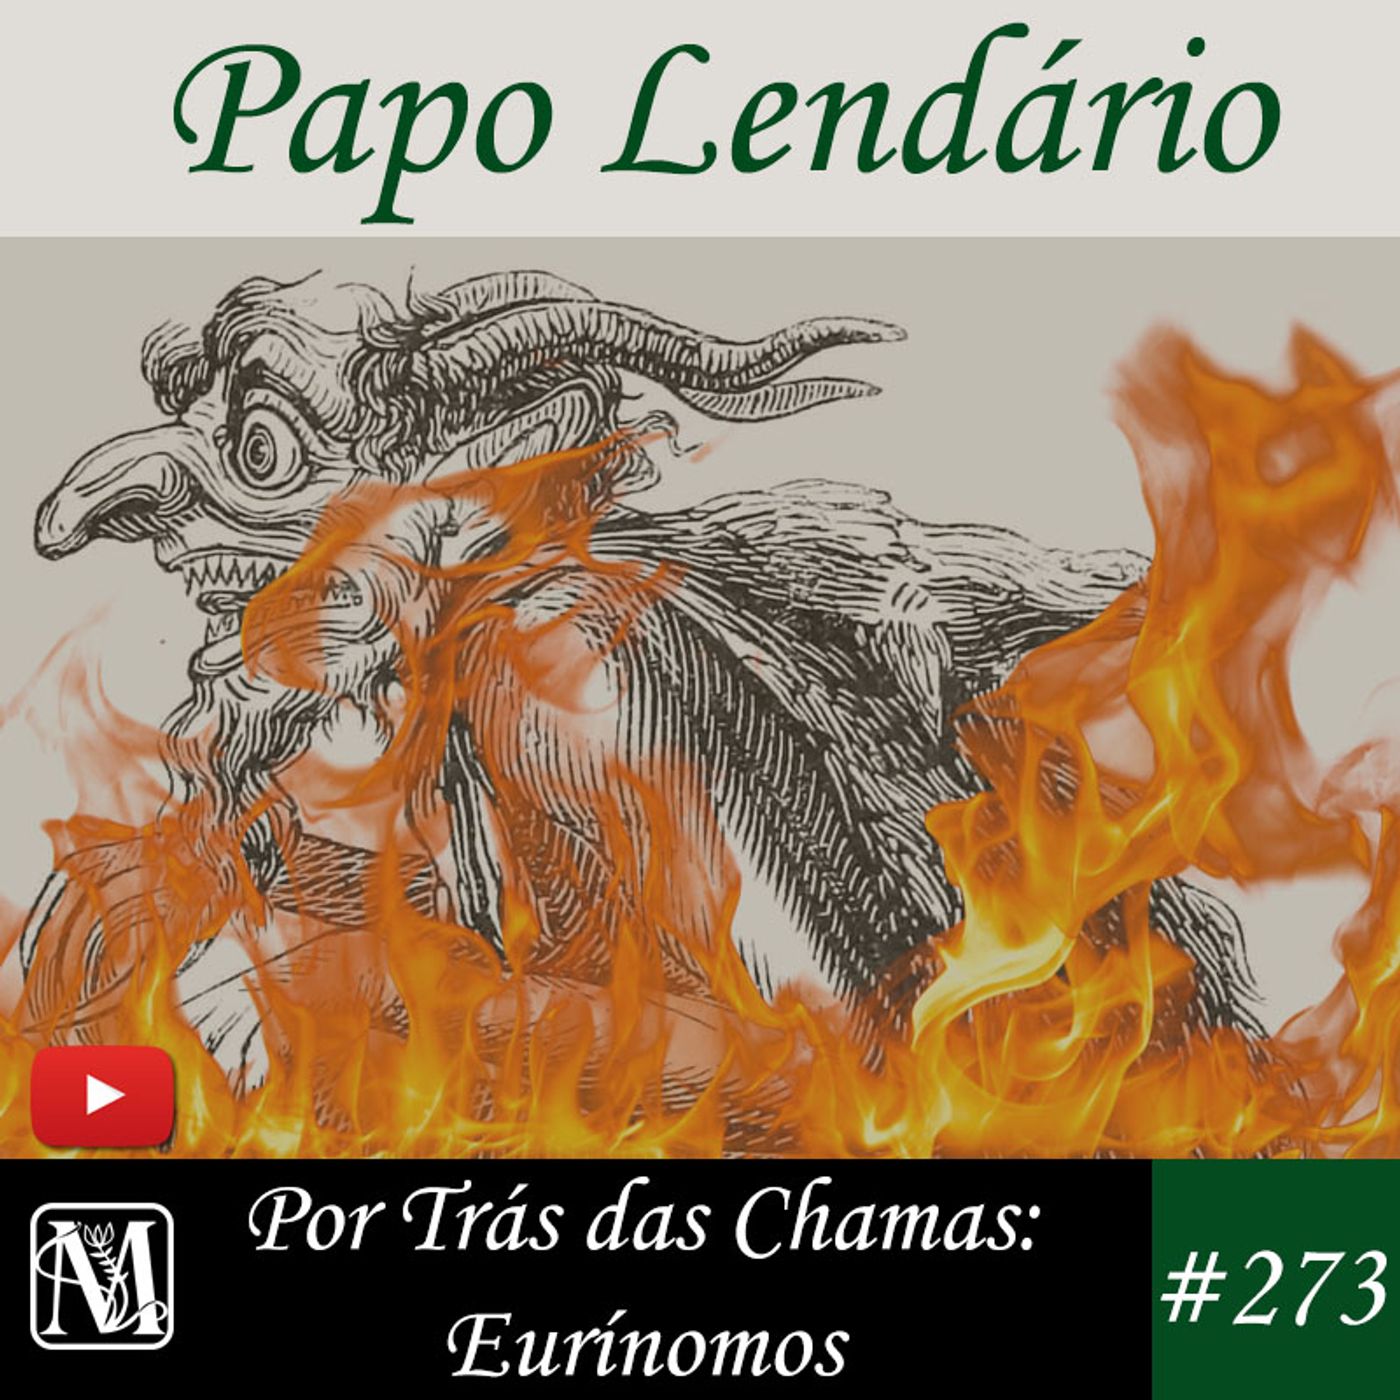 Papo Lendario #273 - Por Trás das Chamas: Eurínomos.